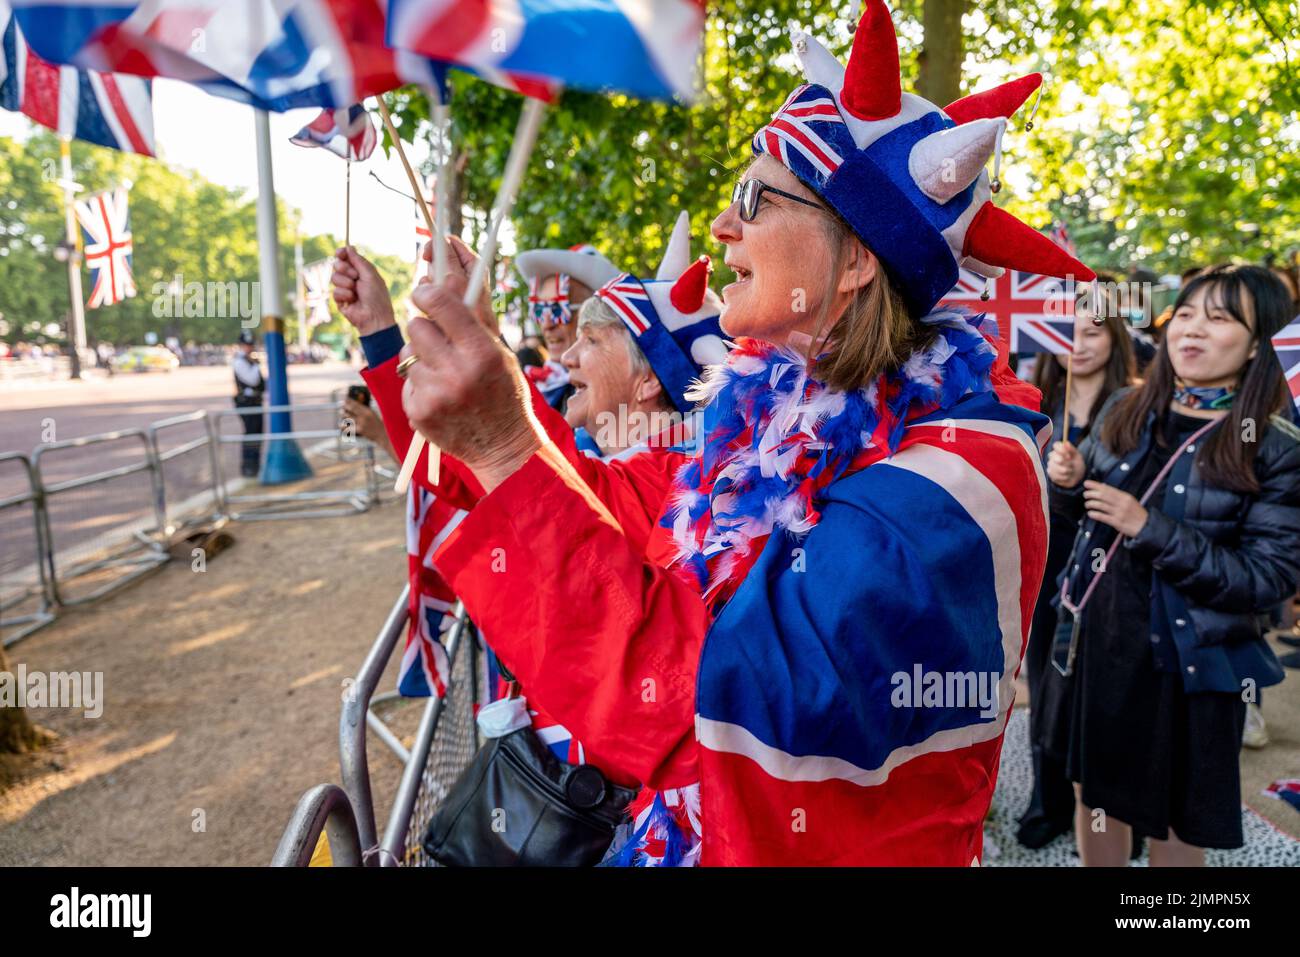 Un grupo de gente británica que acampó fuera de la noche a lo largo del centro comercial canta el himno nacional para el beneficio de la prensa extranjera, Londres, Reino Unido. Foto de stock